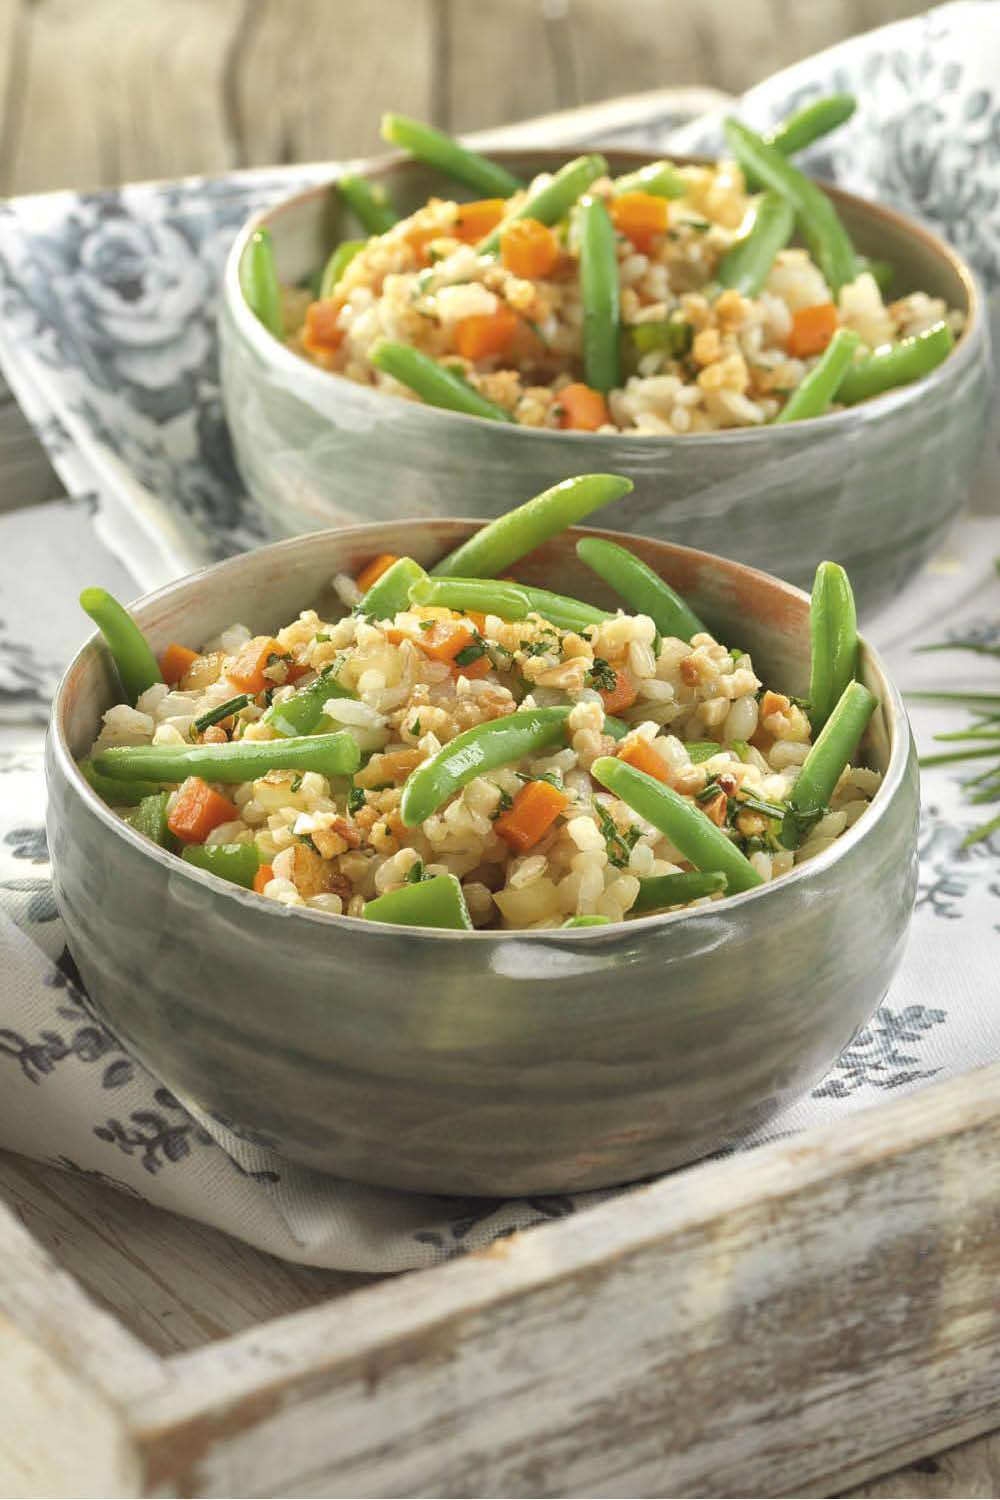 Comidas bajas en calorías: arroz integral con verduras de temporada.